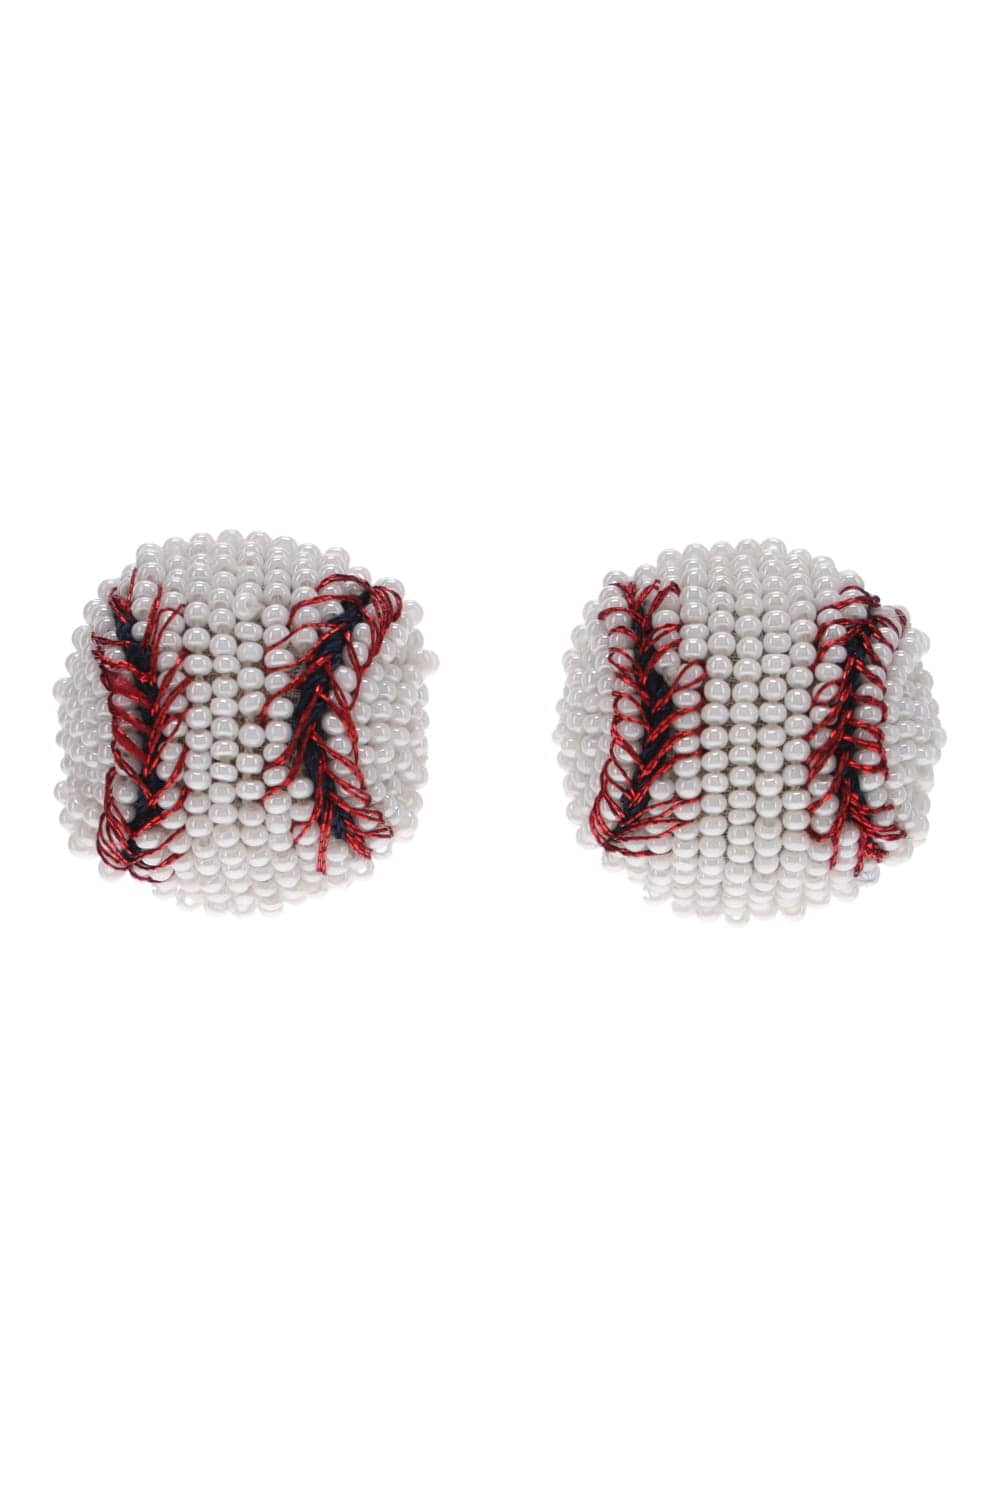 Mignonne Gavigan Baseball Beaded Stud Earrings